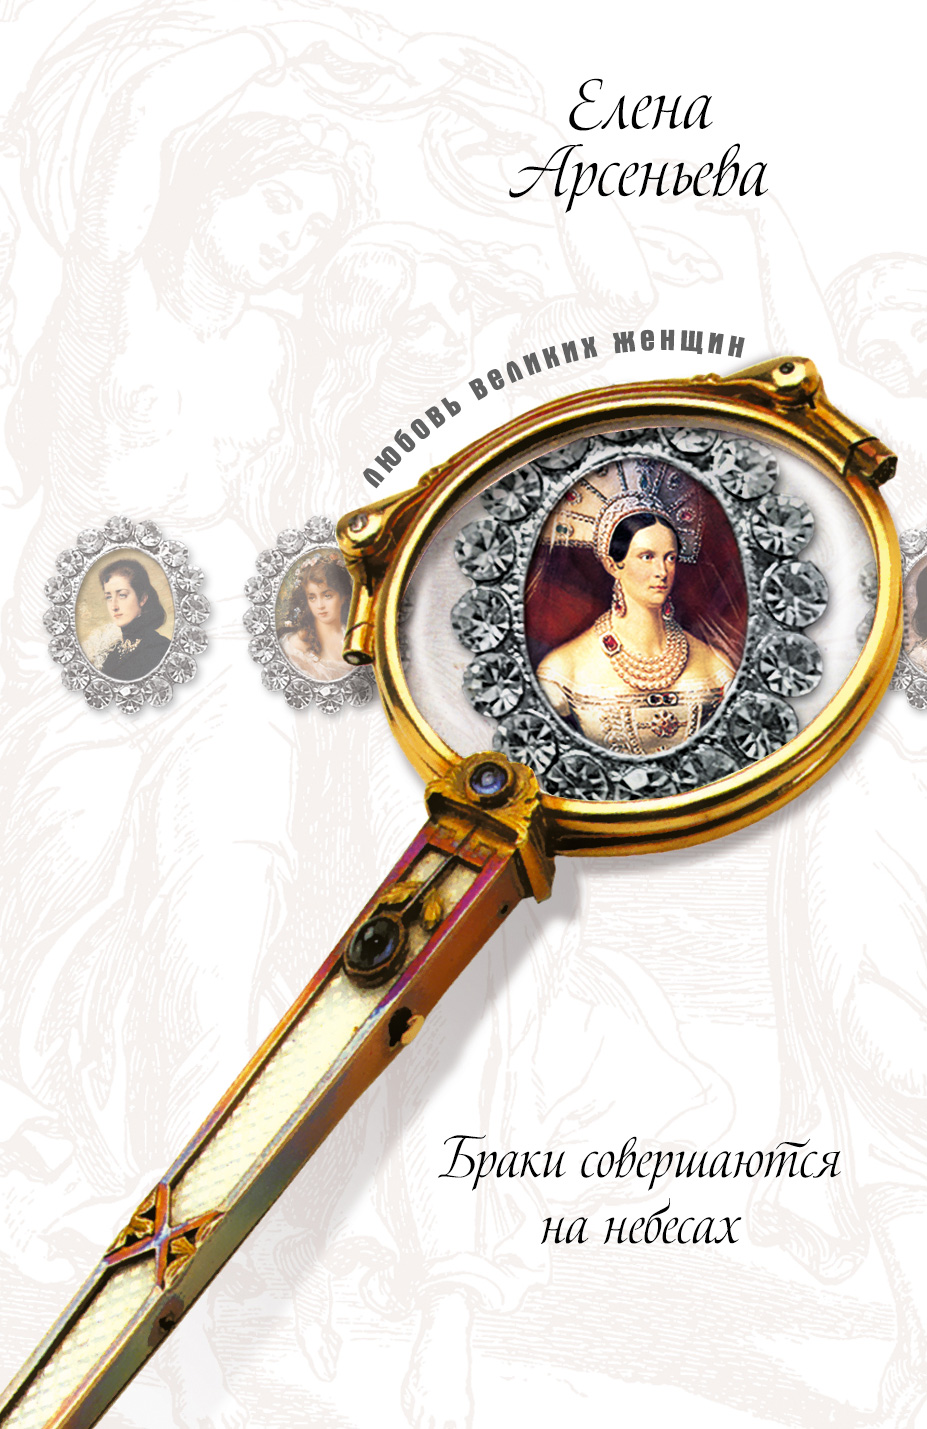 Ожерелье раздора (Софья Палеолог и великий князь Иван III)